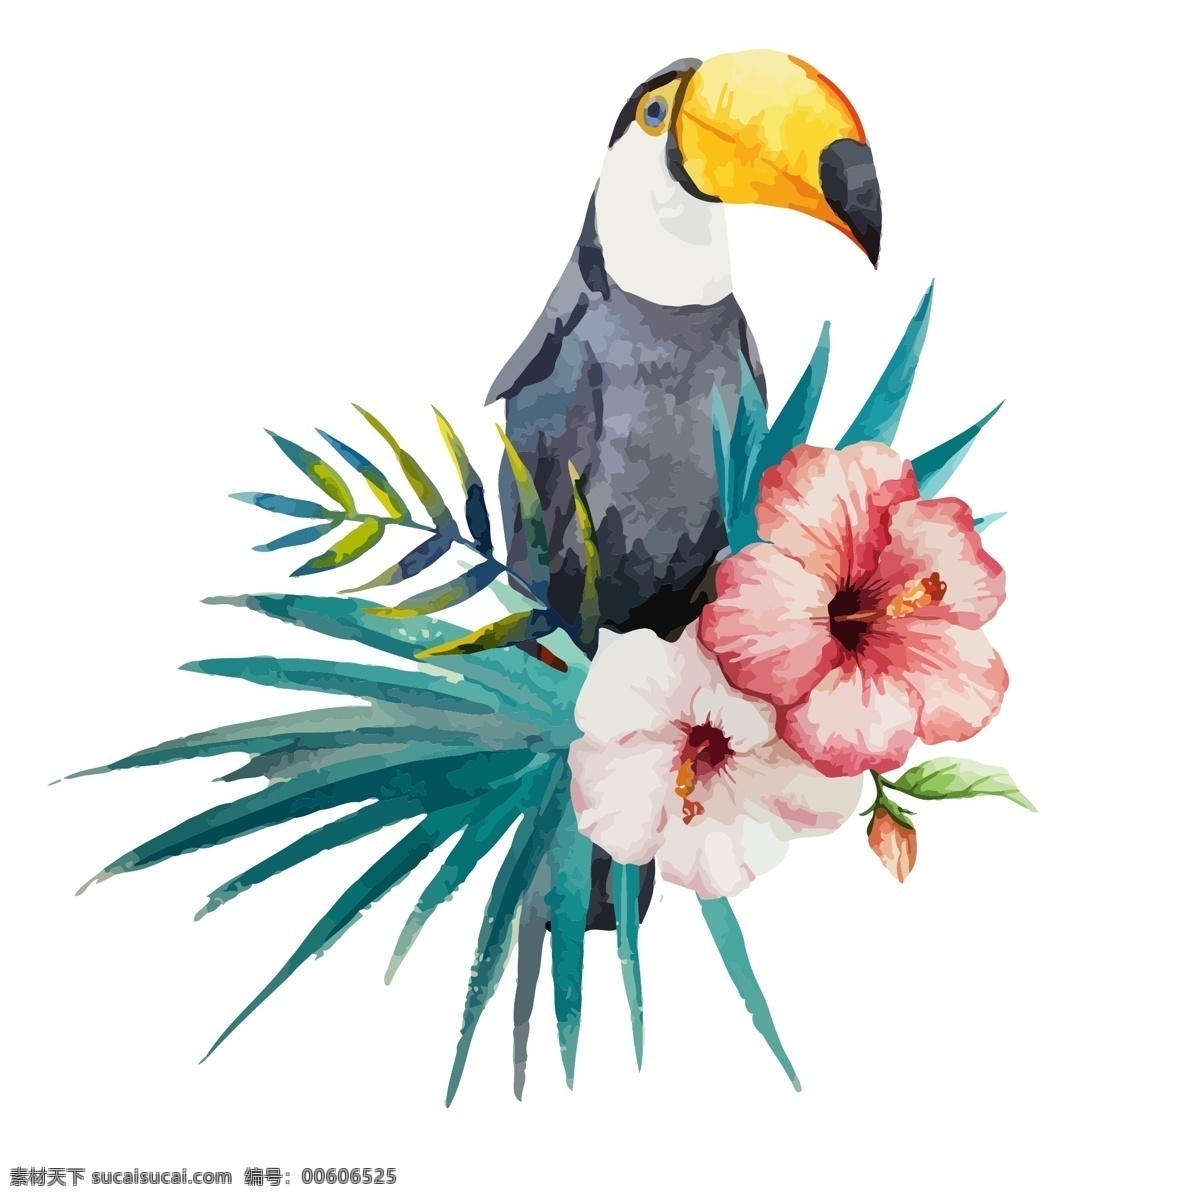 水彩 绘 可爱 大 嘴 鸟 插画 大嘴鸟 动物 花朵 热带 手绘 水彩绘 植物